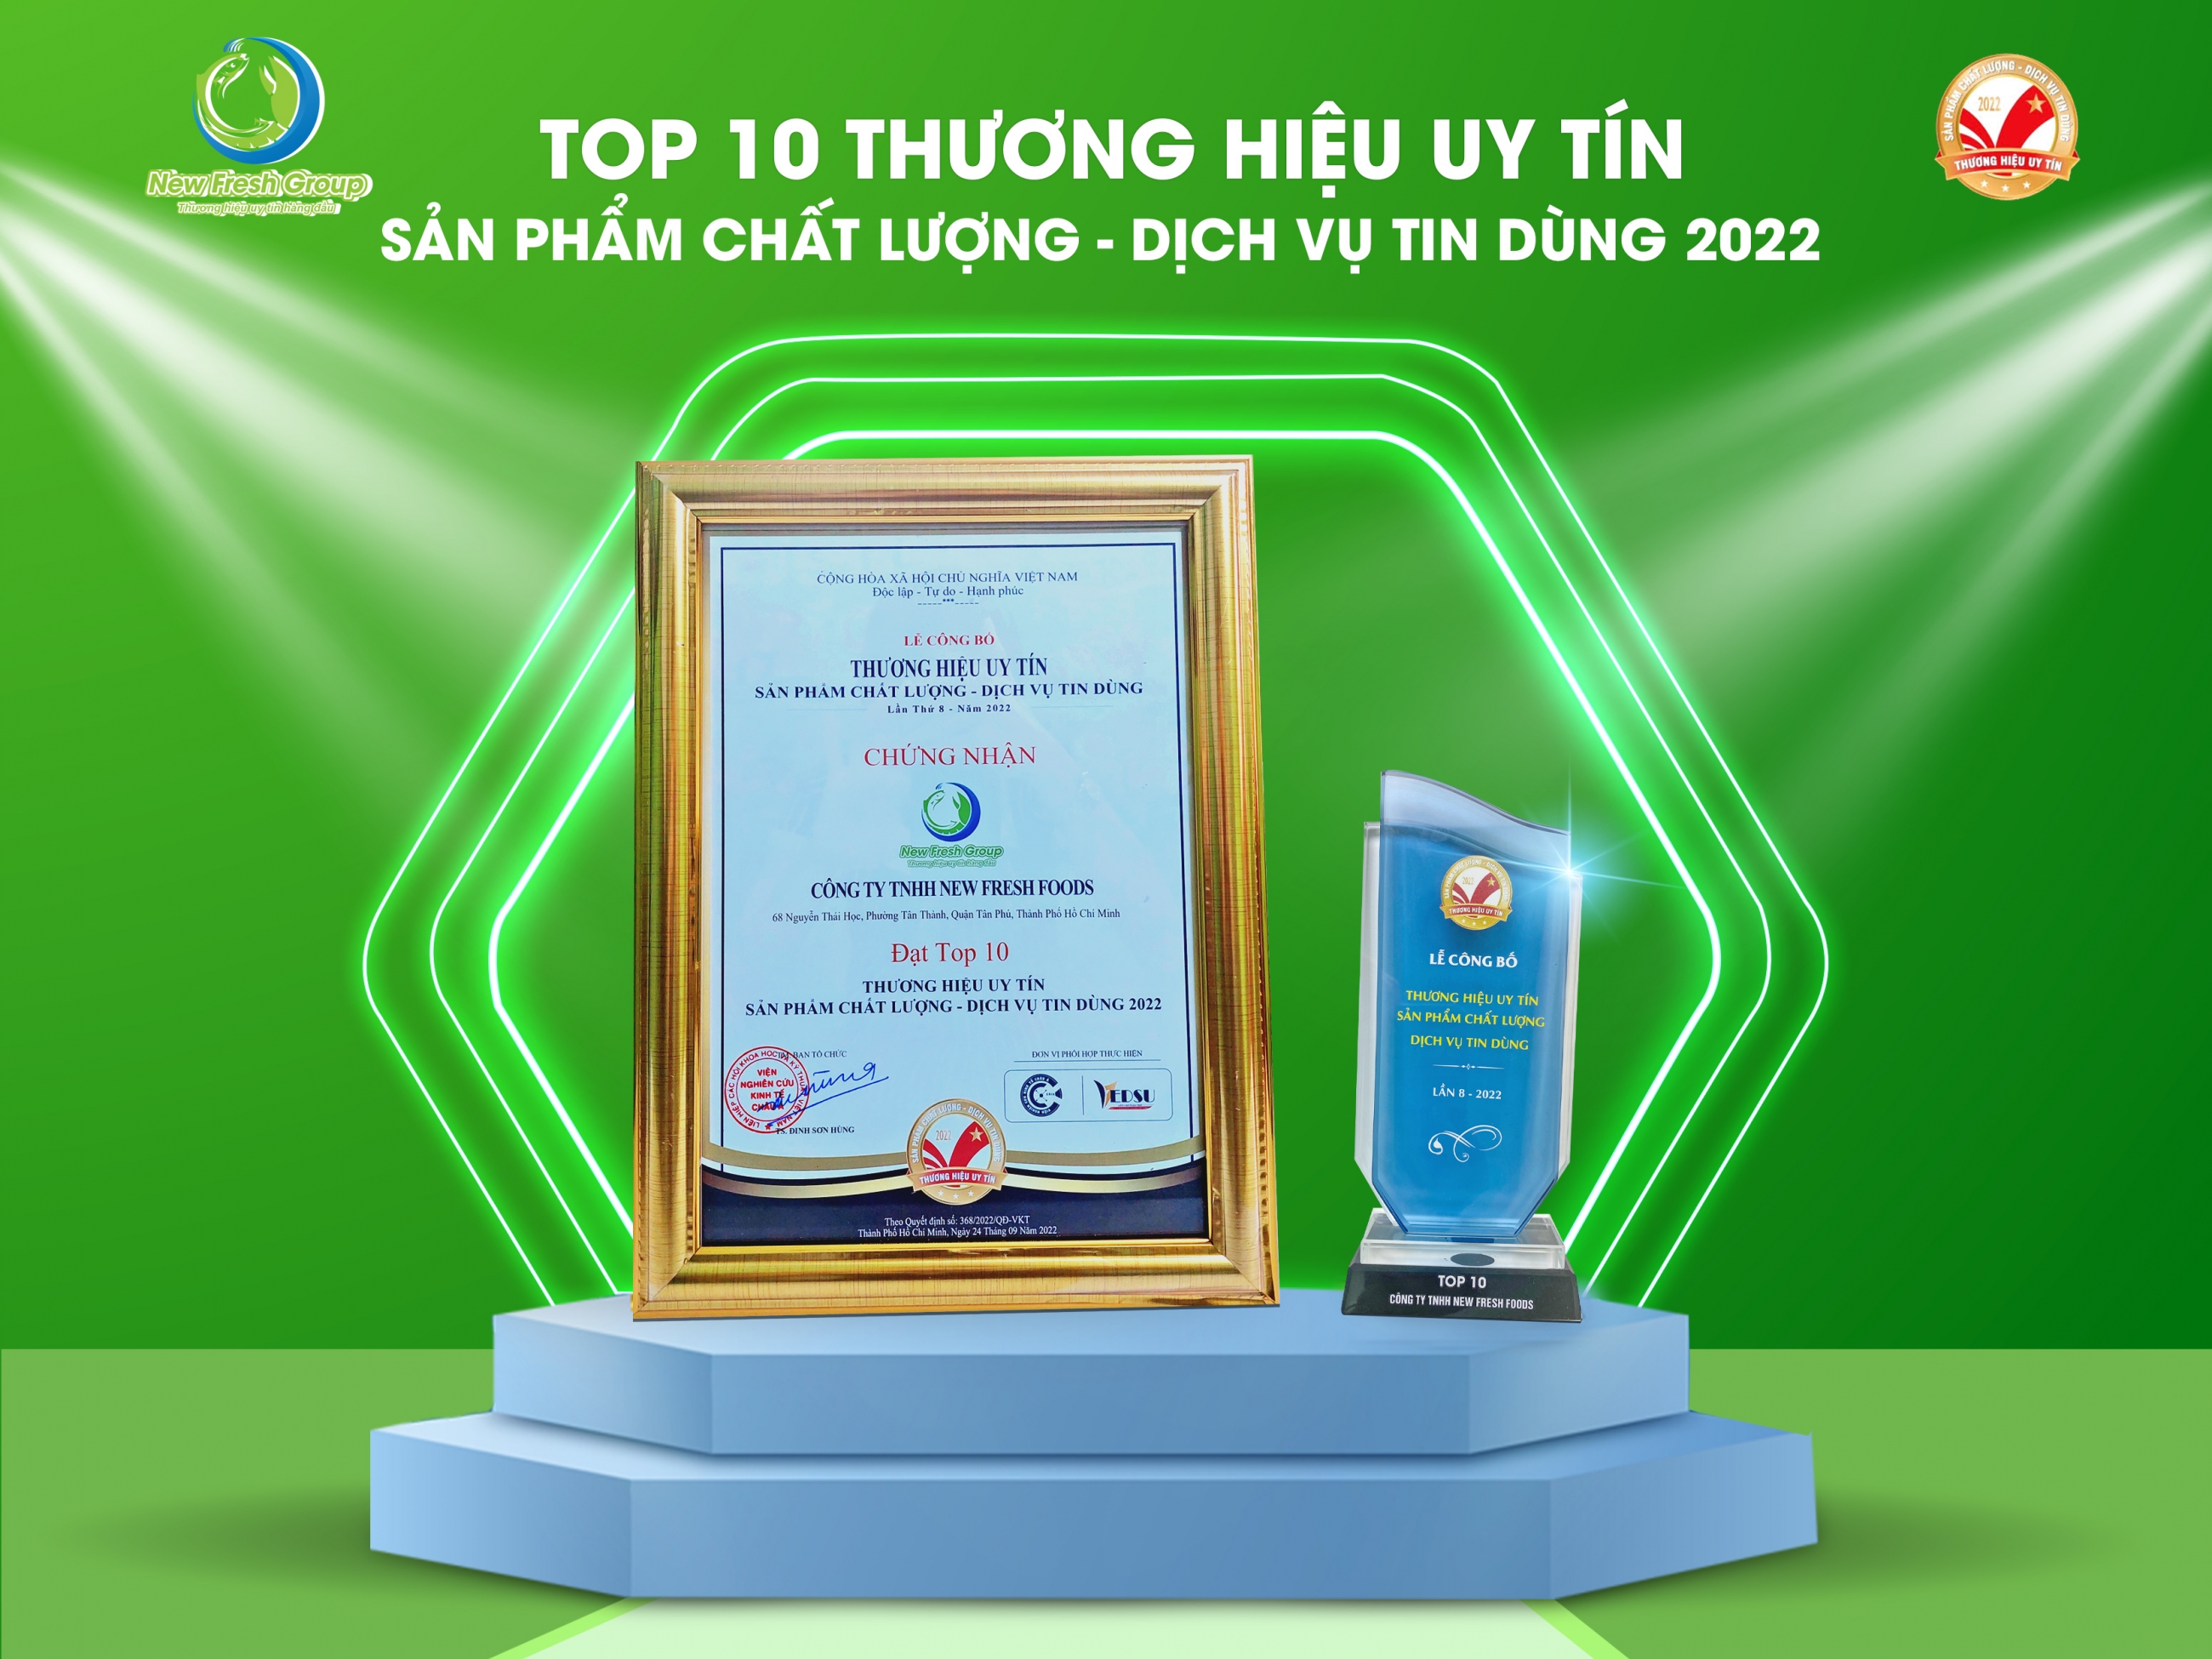 cup-vang-top-10-thuong-hieu-uy-tin-2022